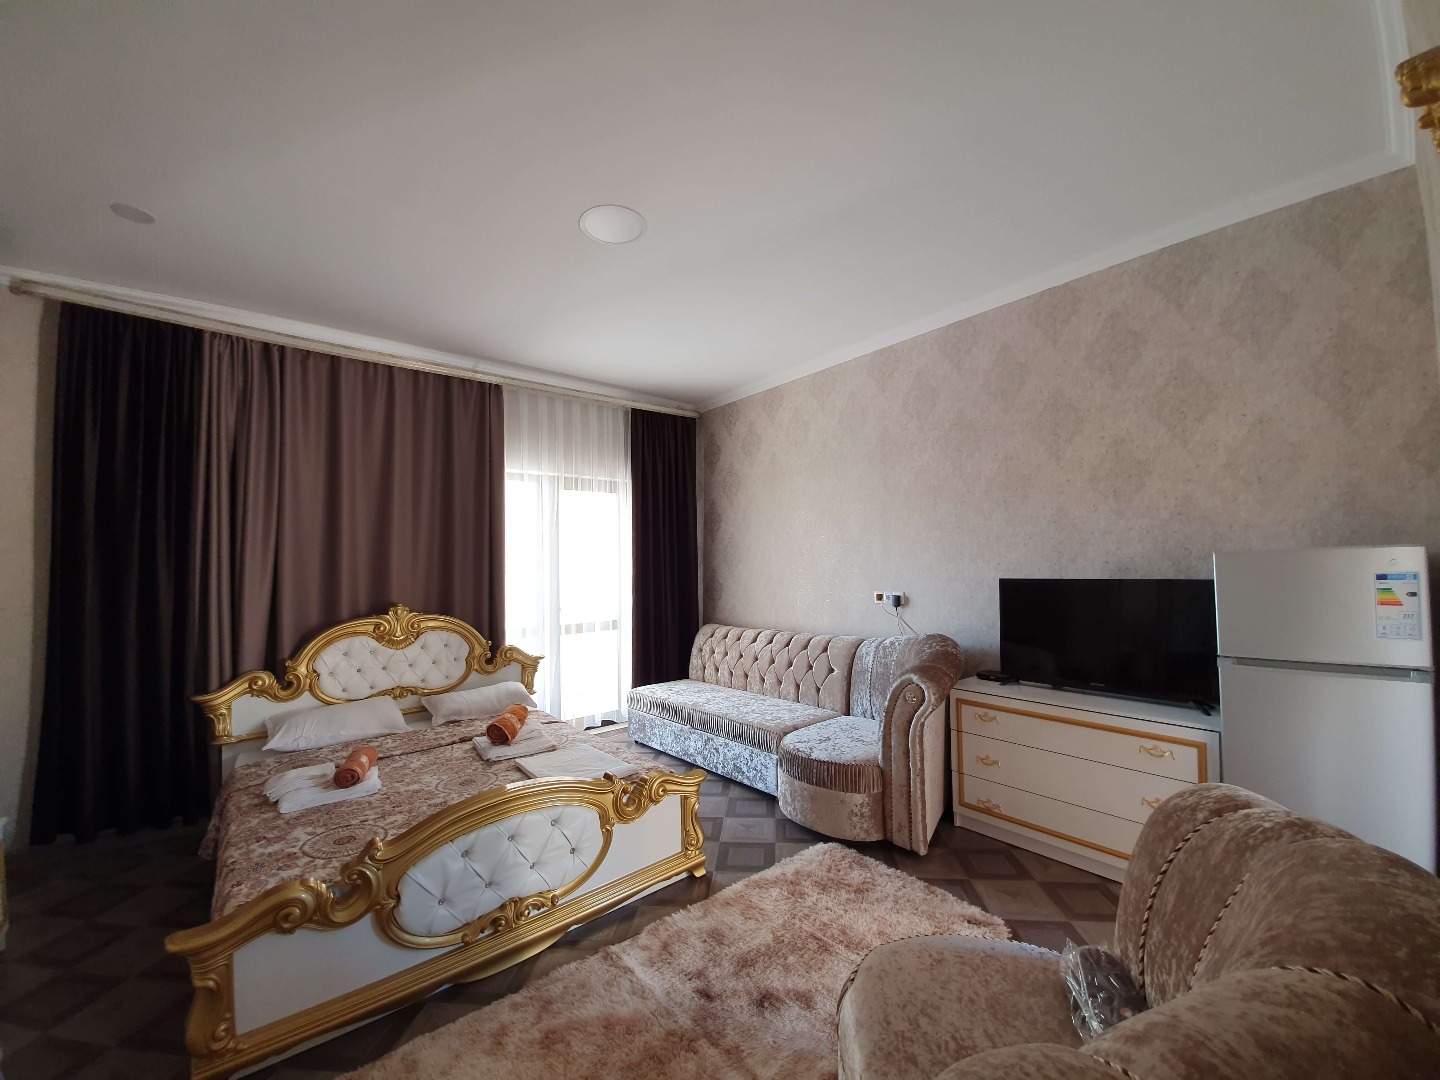 Suite 1 комнатный - Limpopo Travel в Казахстане